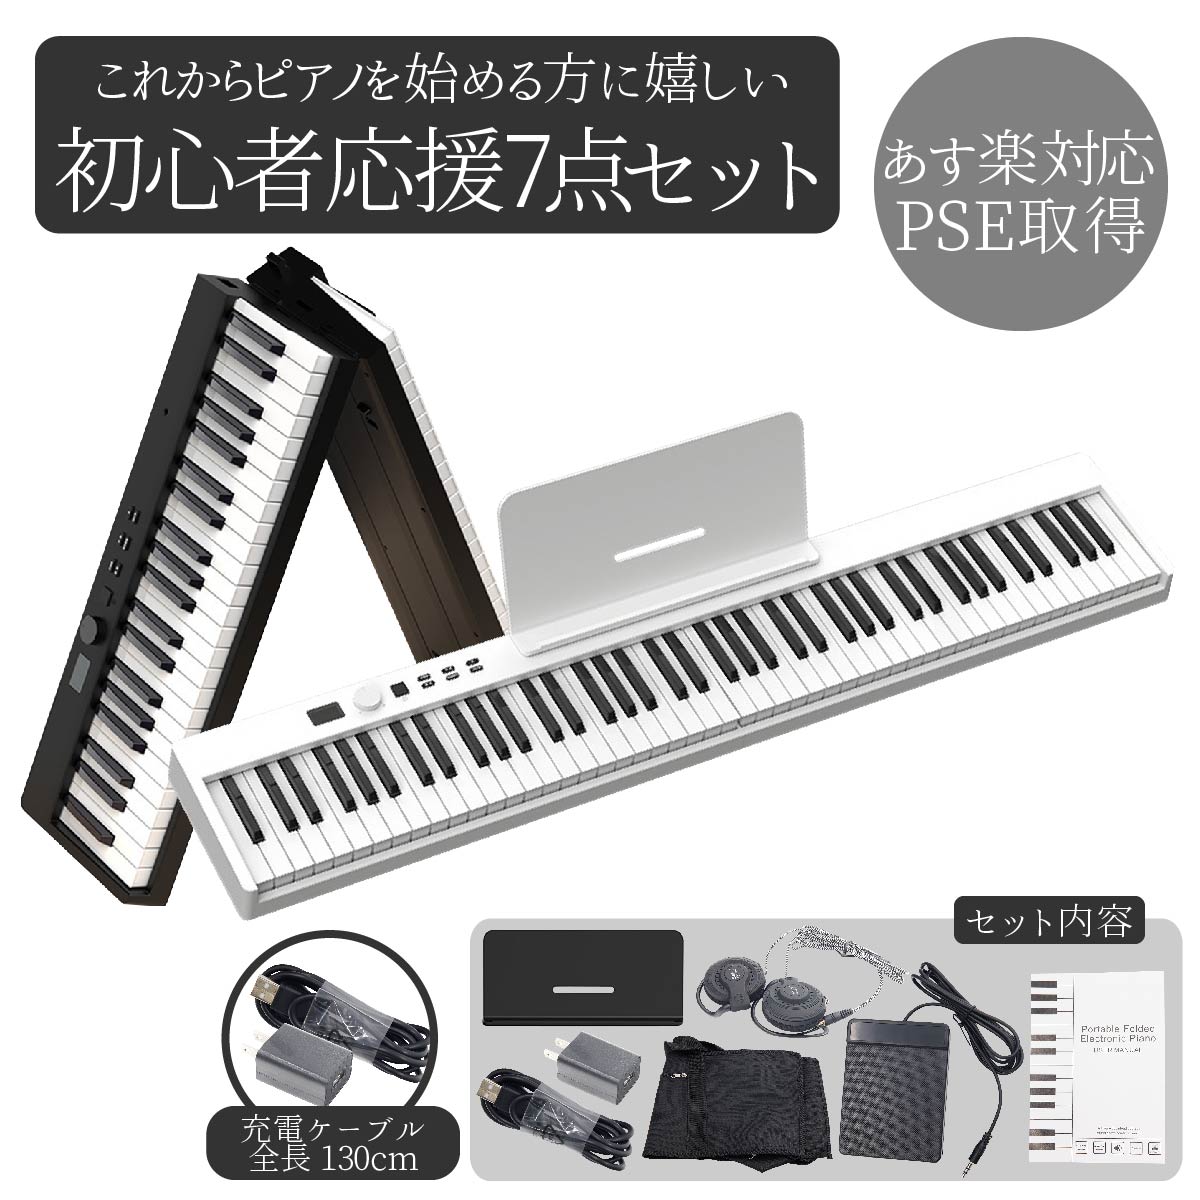 【動画あり】 電子ピアノ 88鍵盤 初